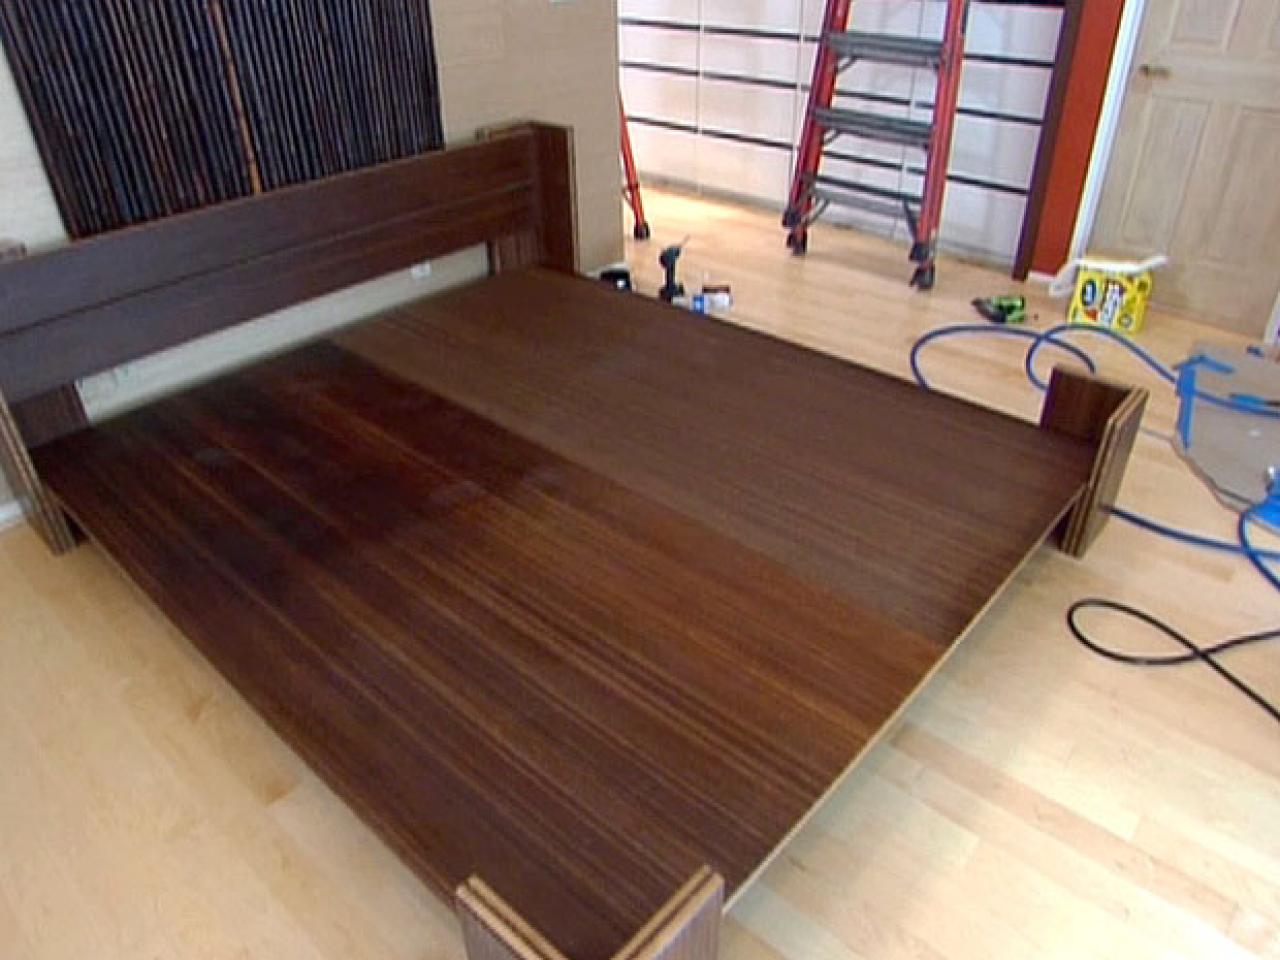 How do you build a platform bed?